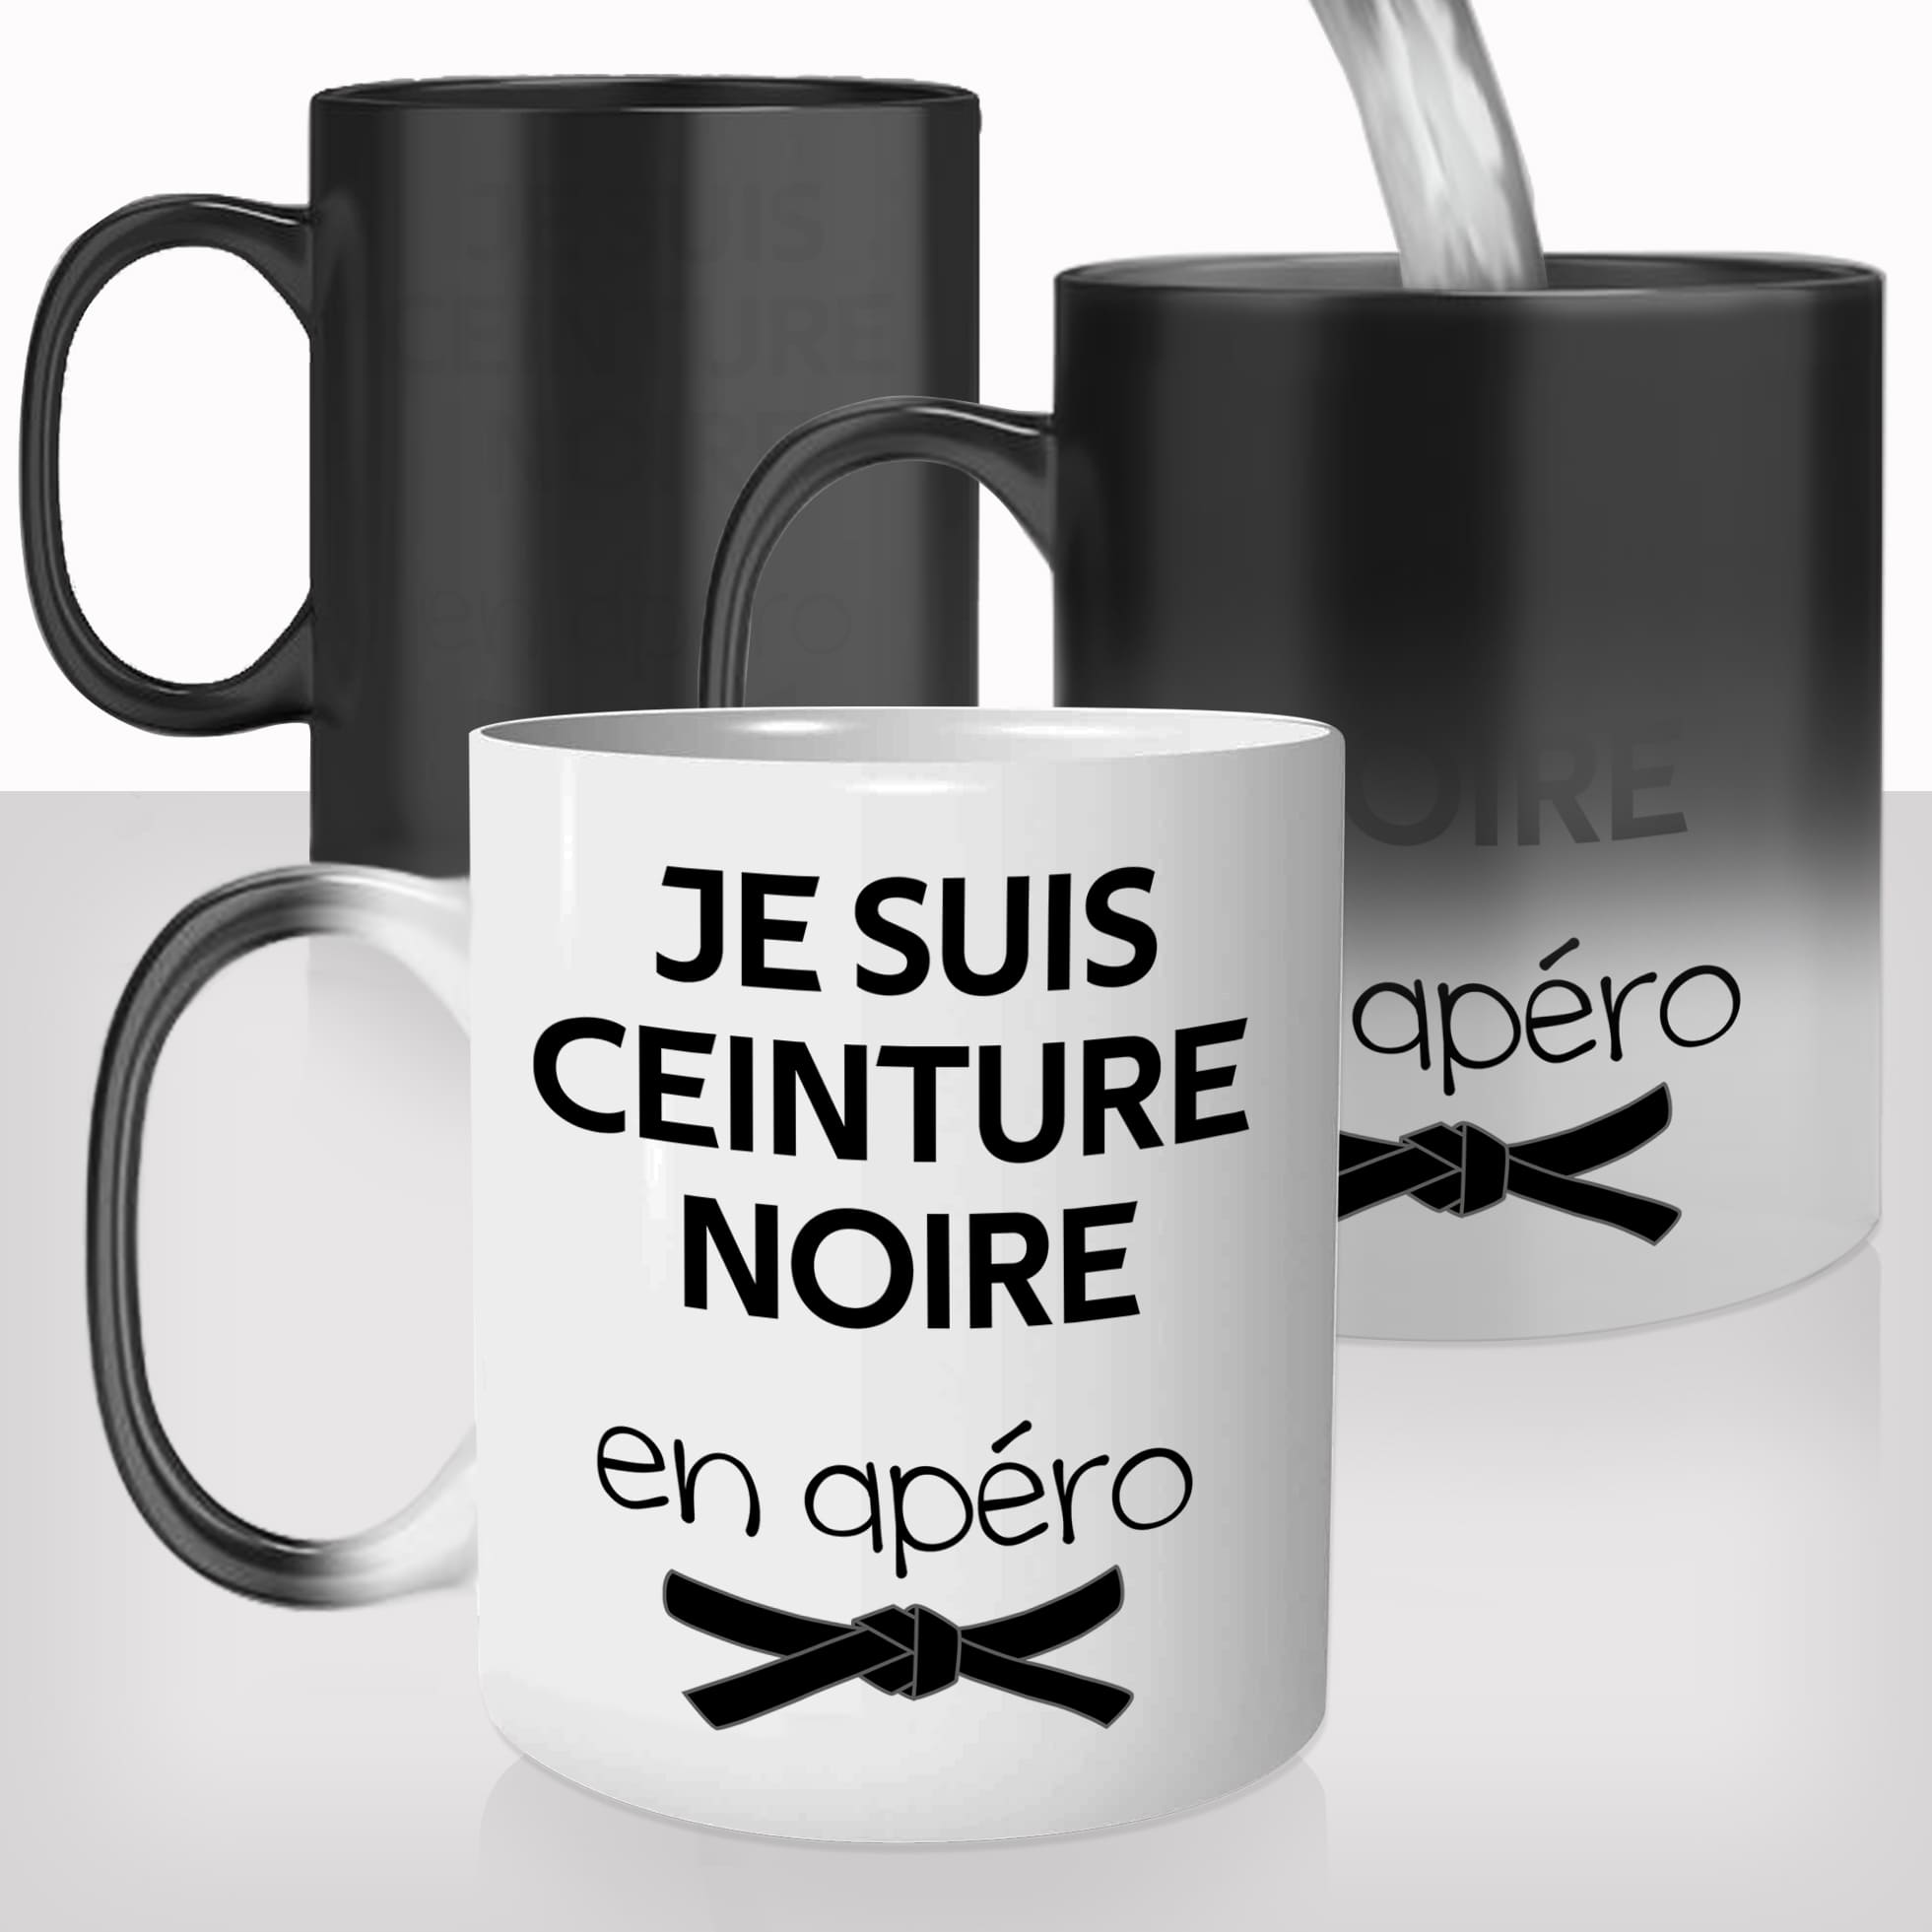 mug-tasse-magique-thermique-thermoreactif-personnalisé-personnalisable-ceinture-noire-apéro-prenom-offrir-idée-cadeau-drole-original-café-thé-2